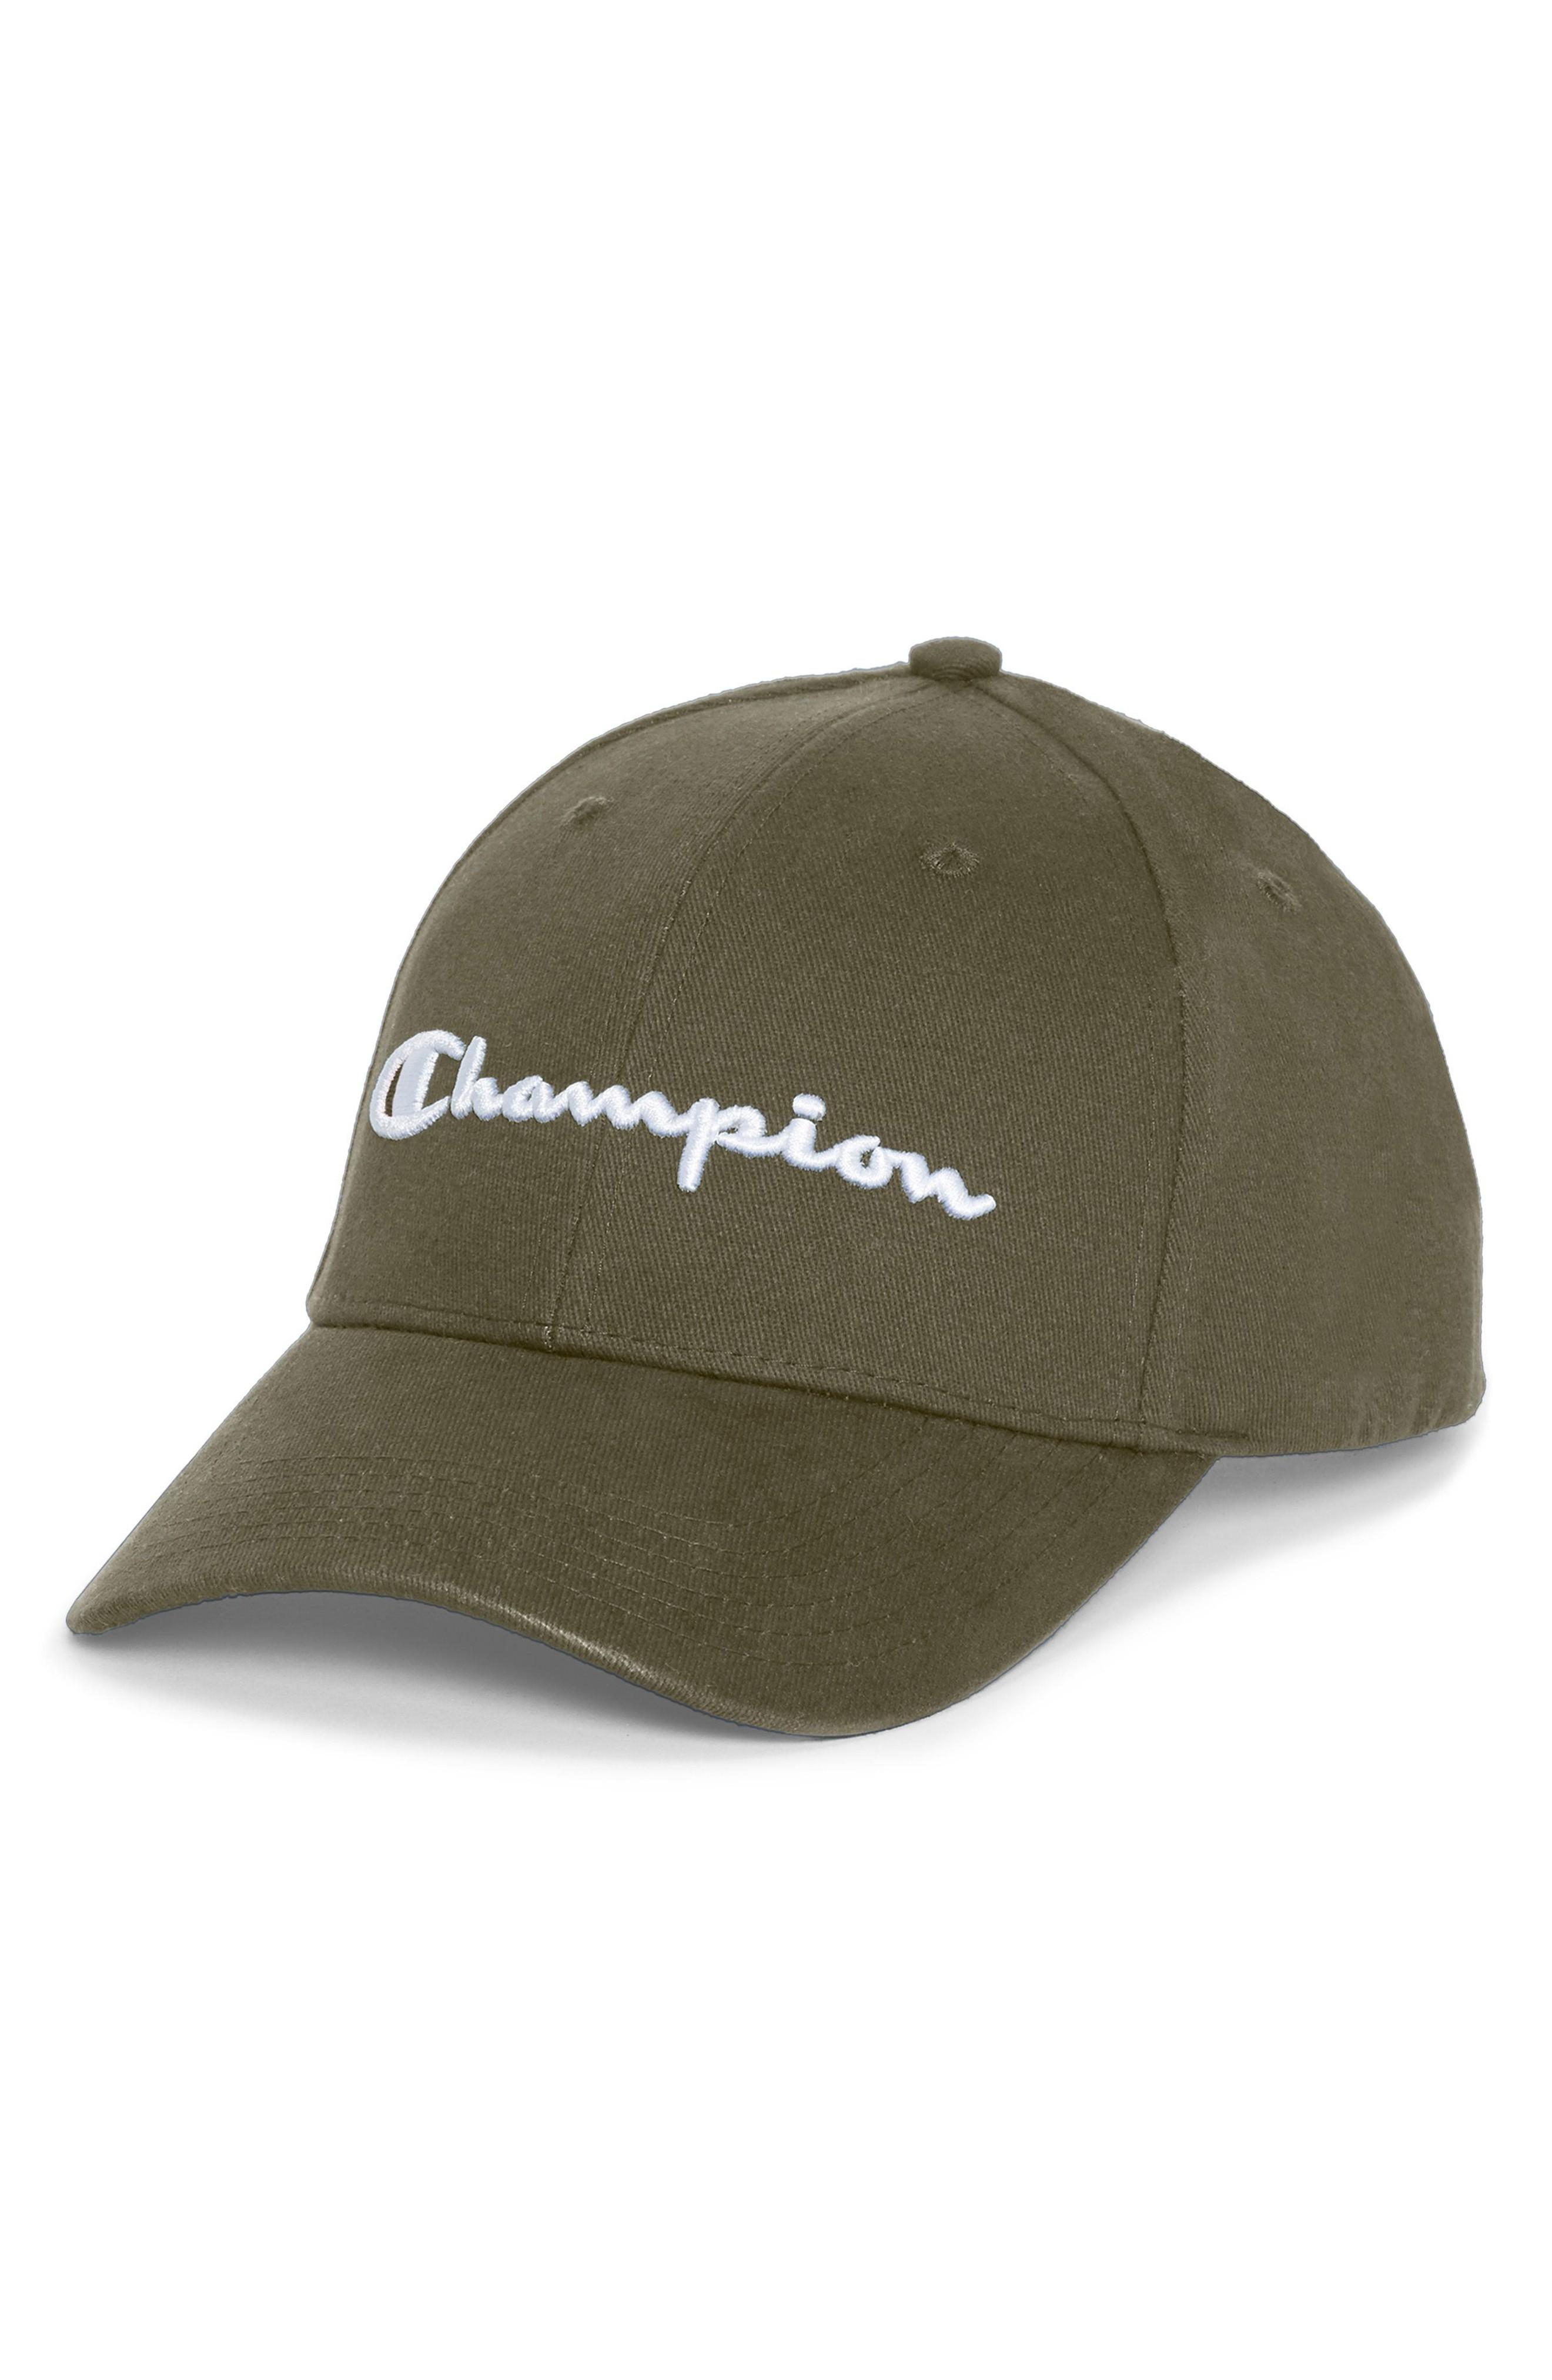 champion classic twill hat mission green